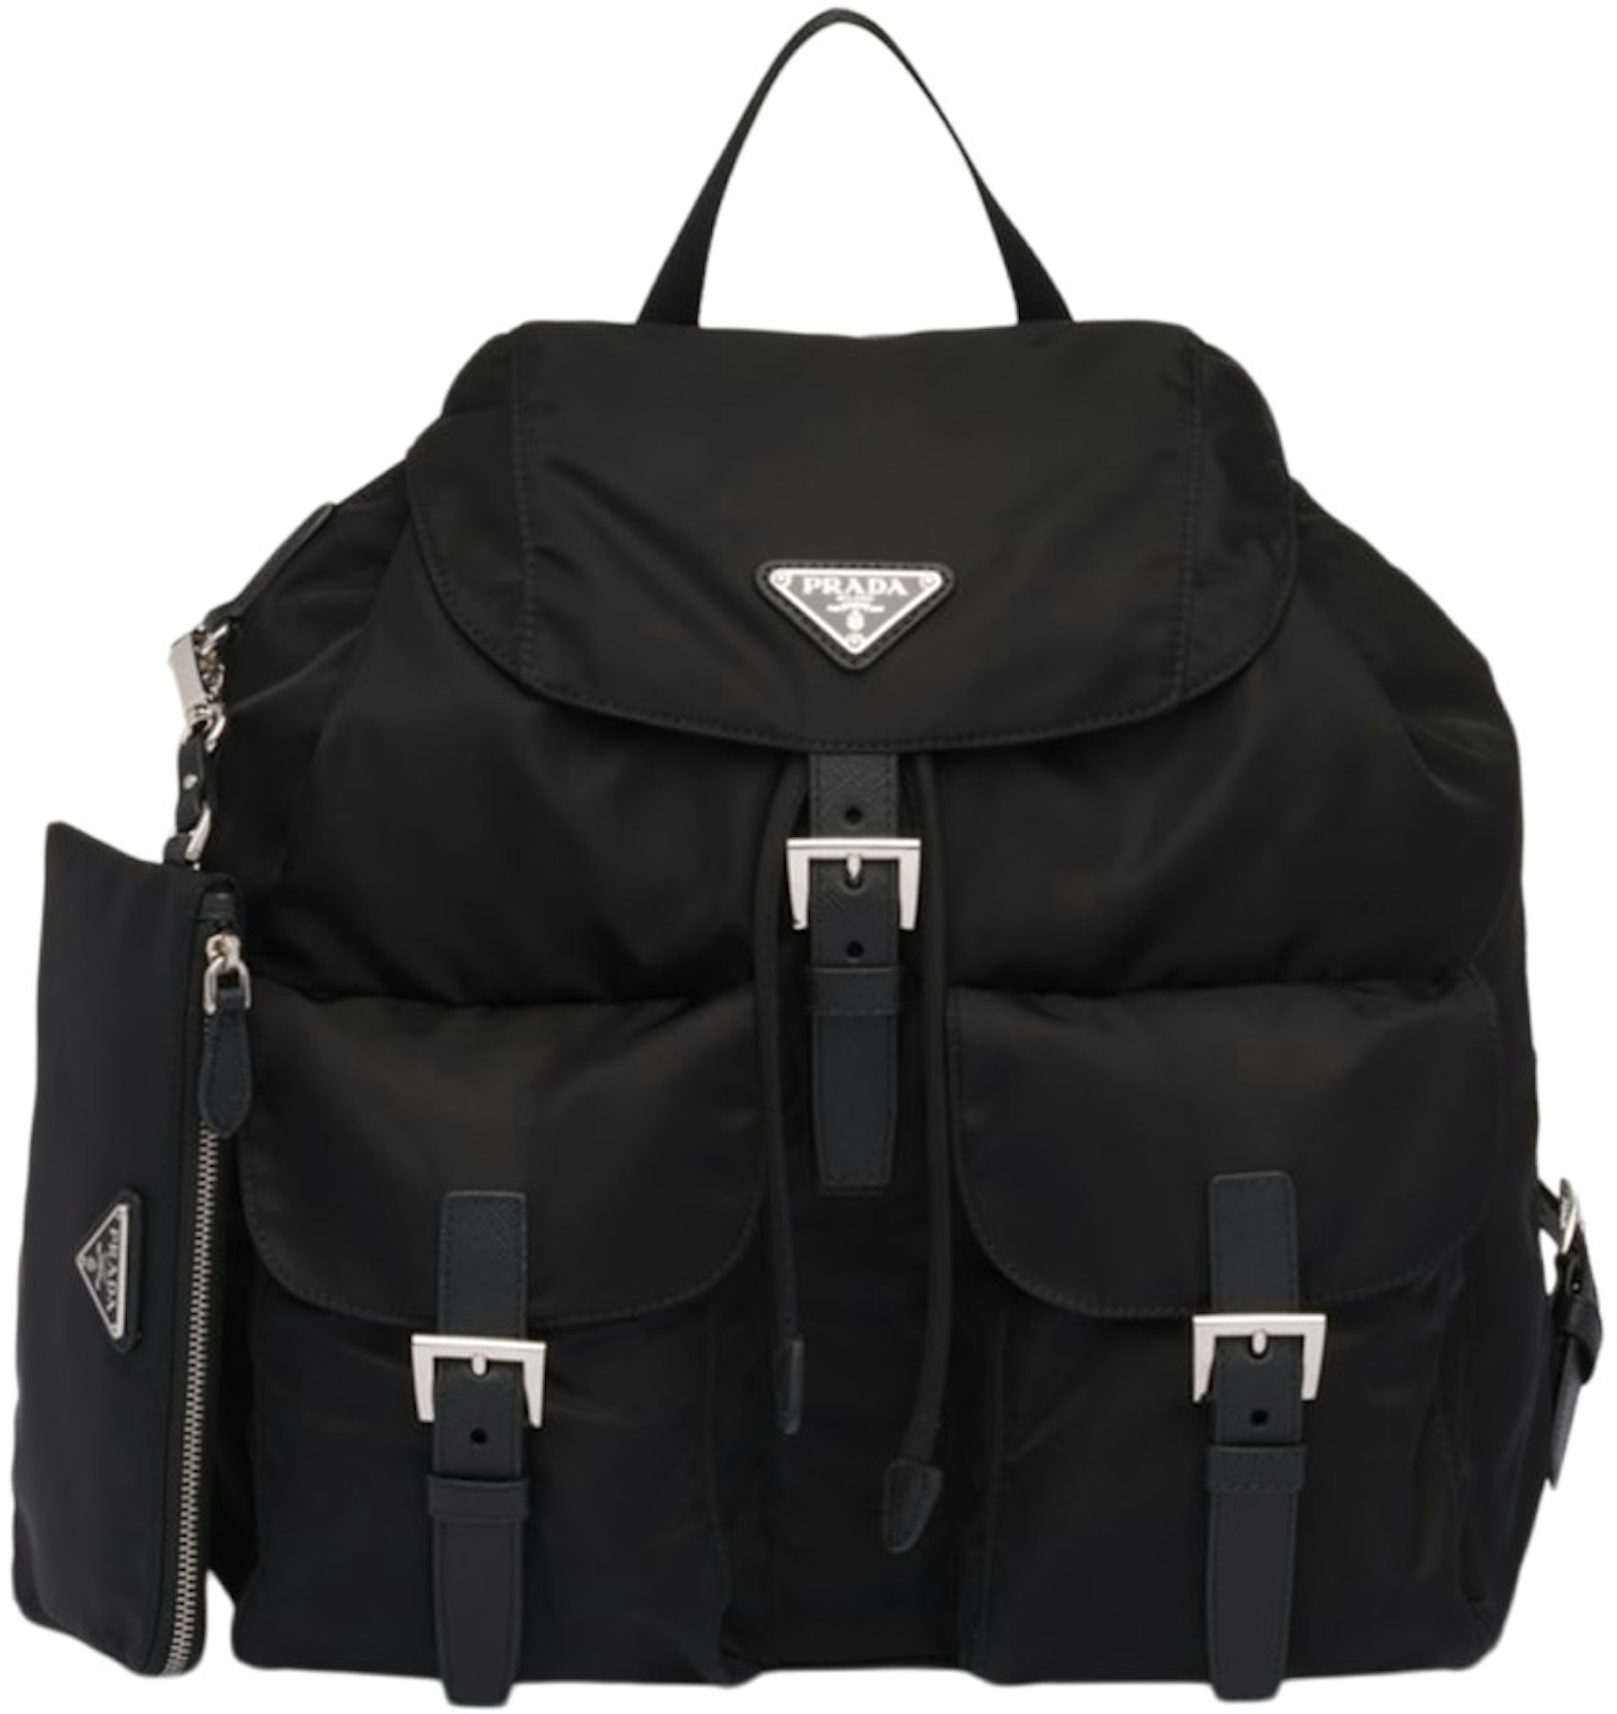 Re Nylon Logo Backpack in Black - Prada